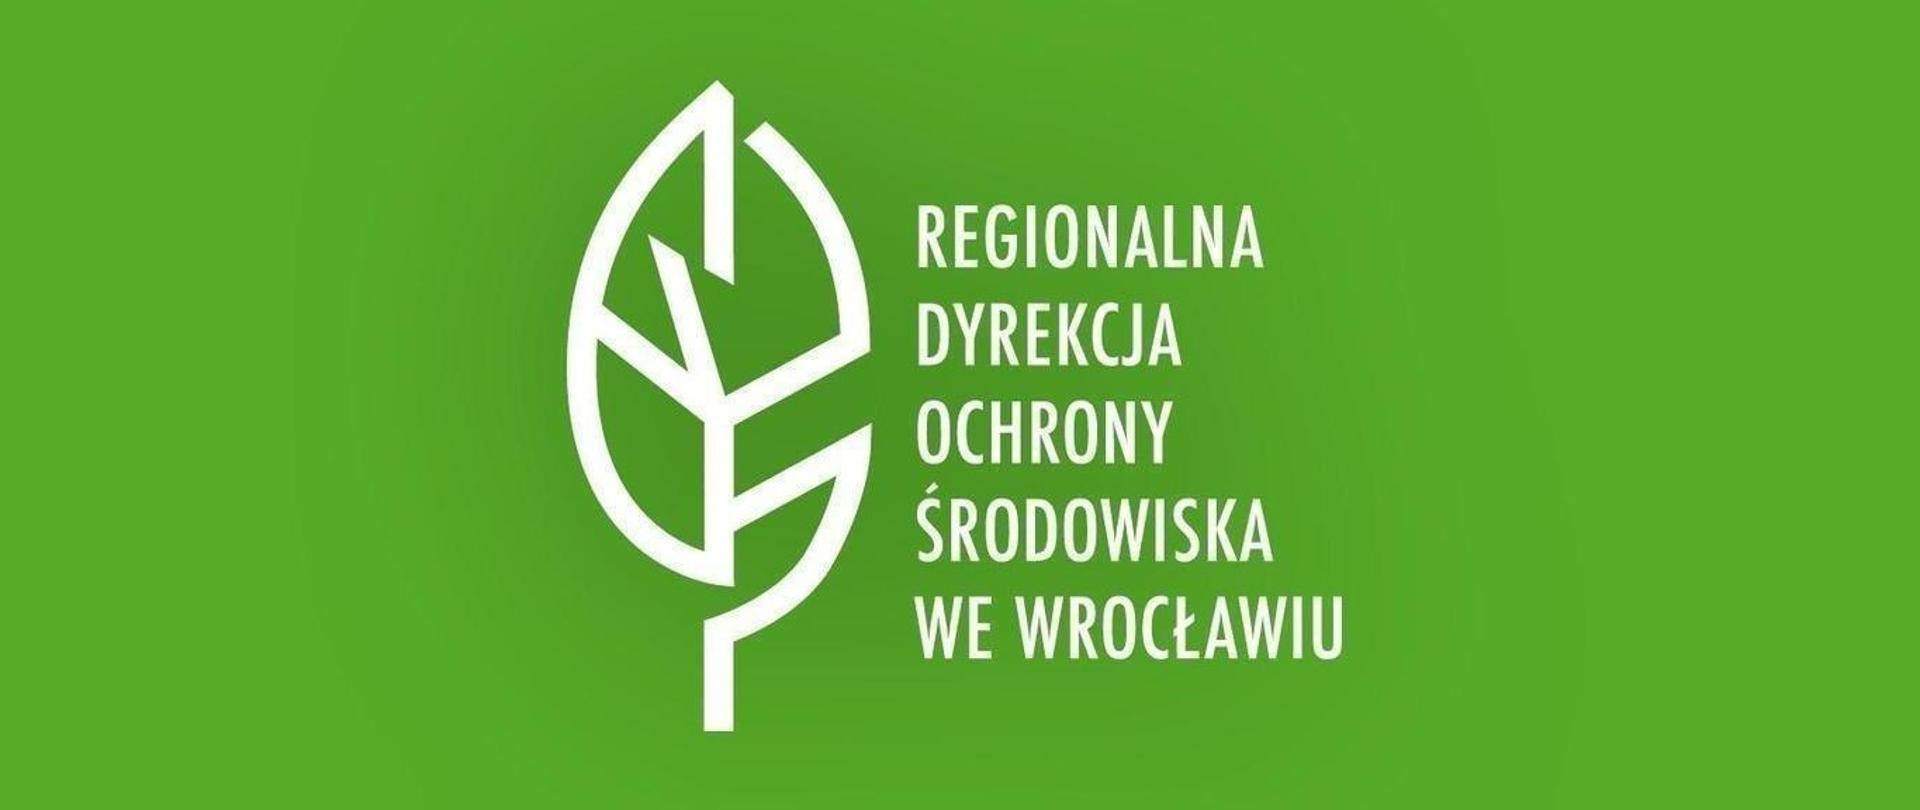 Regionalna Dyrekcja Ochrony Środowiska We Wrocławiu